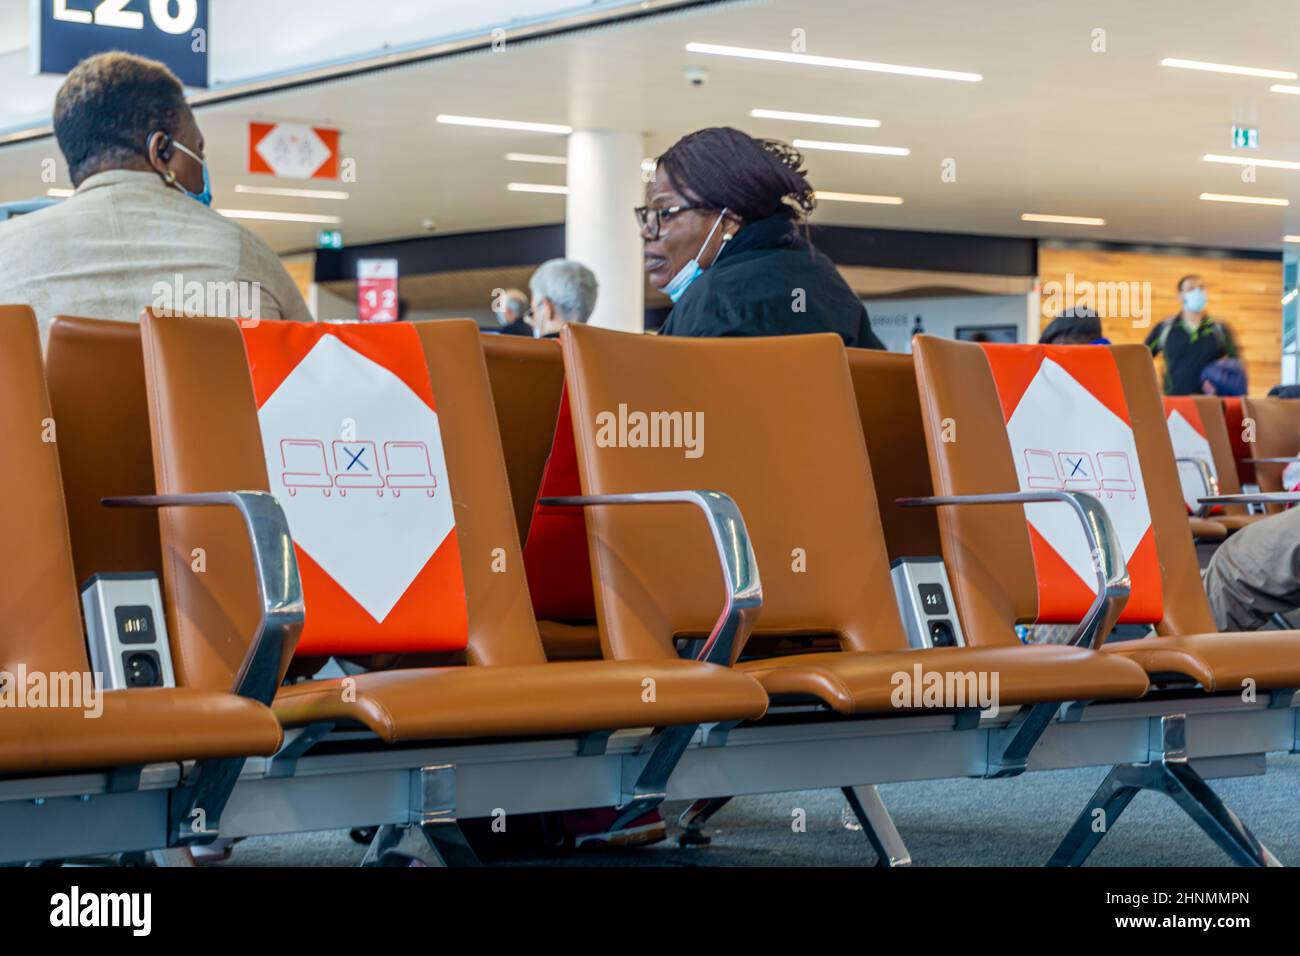 Charles de Gaulle, París, 13 de enero de 2022 - Hombre y mujer negros en conversación detrás de asientos vacíos con señales de distanciamiento social en el aeropuerto Foto de stock